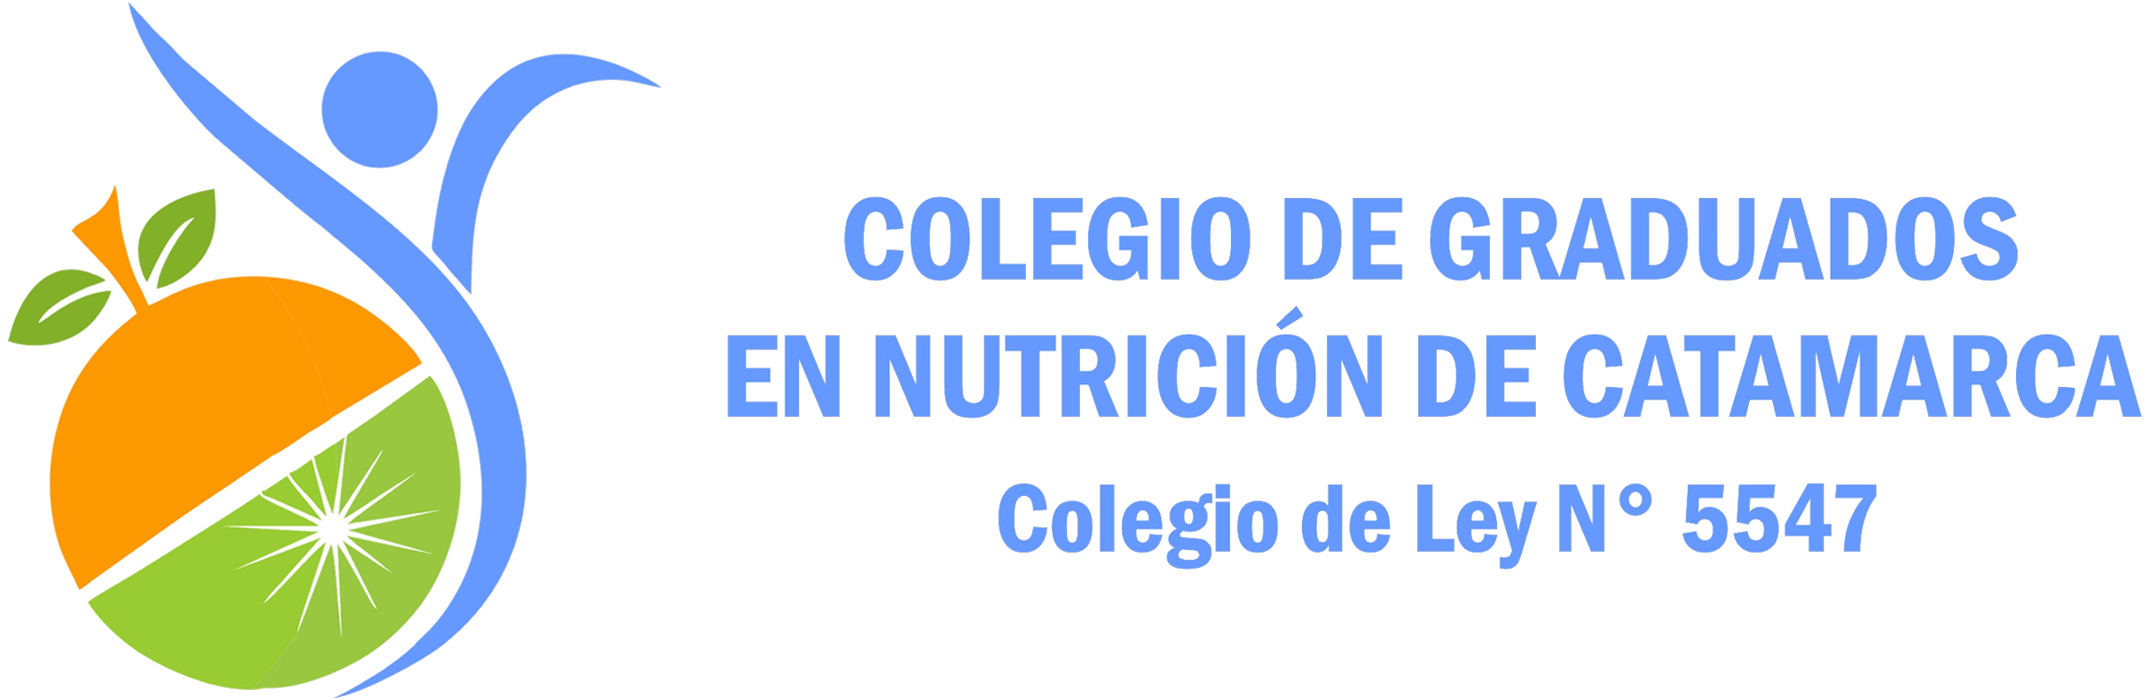 Colegio de Graduados en Nutrición de Catamarca